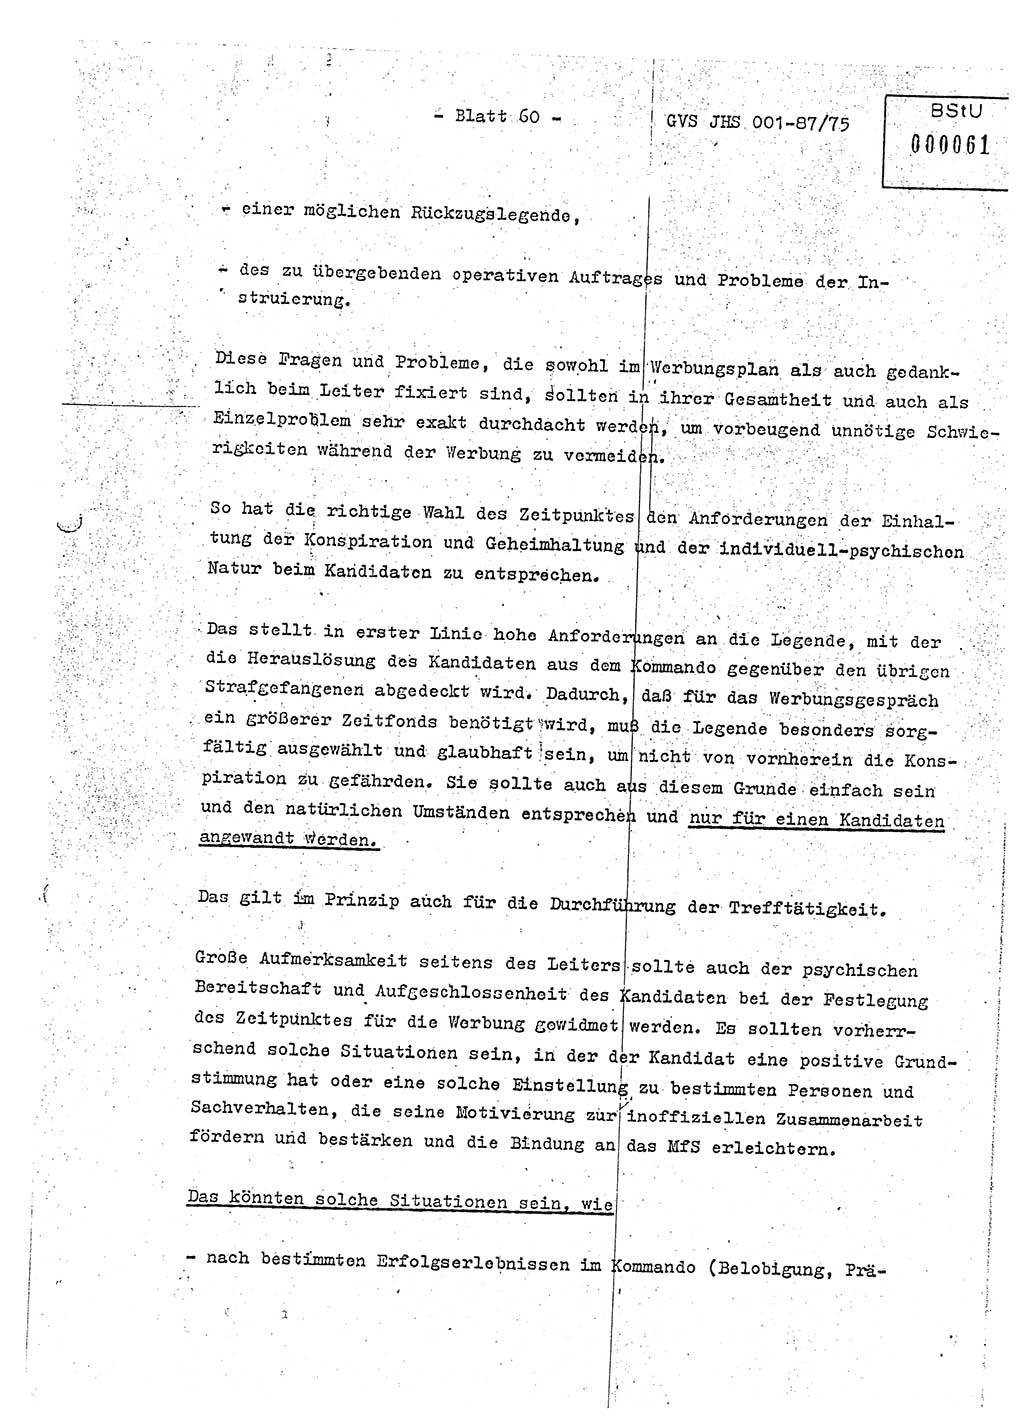 Diplomarbeit Hauptmann Volkmar Heinz (Abt. ⅩⅣ), Oberleutnant Lothar Rüdiger (BV Lpz. Abt. Ⅺ), Ministerium für Staatssicherheit (MfS) [Deutsche Demokratische Republik (DDR)], Juristische Hochschule (JHS), Geheime Verschlußsache (GVS) o001-87/75, Potsdam 1975, Seite 60 (Dipl.-Arb. MfS DDR JHS GVS o001-87/75 1975, S. 60)